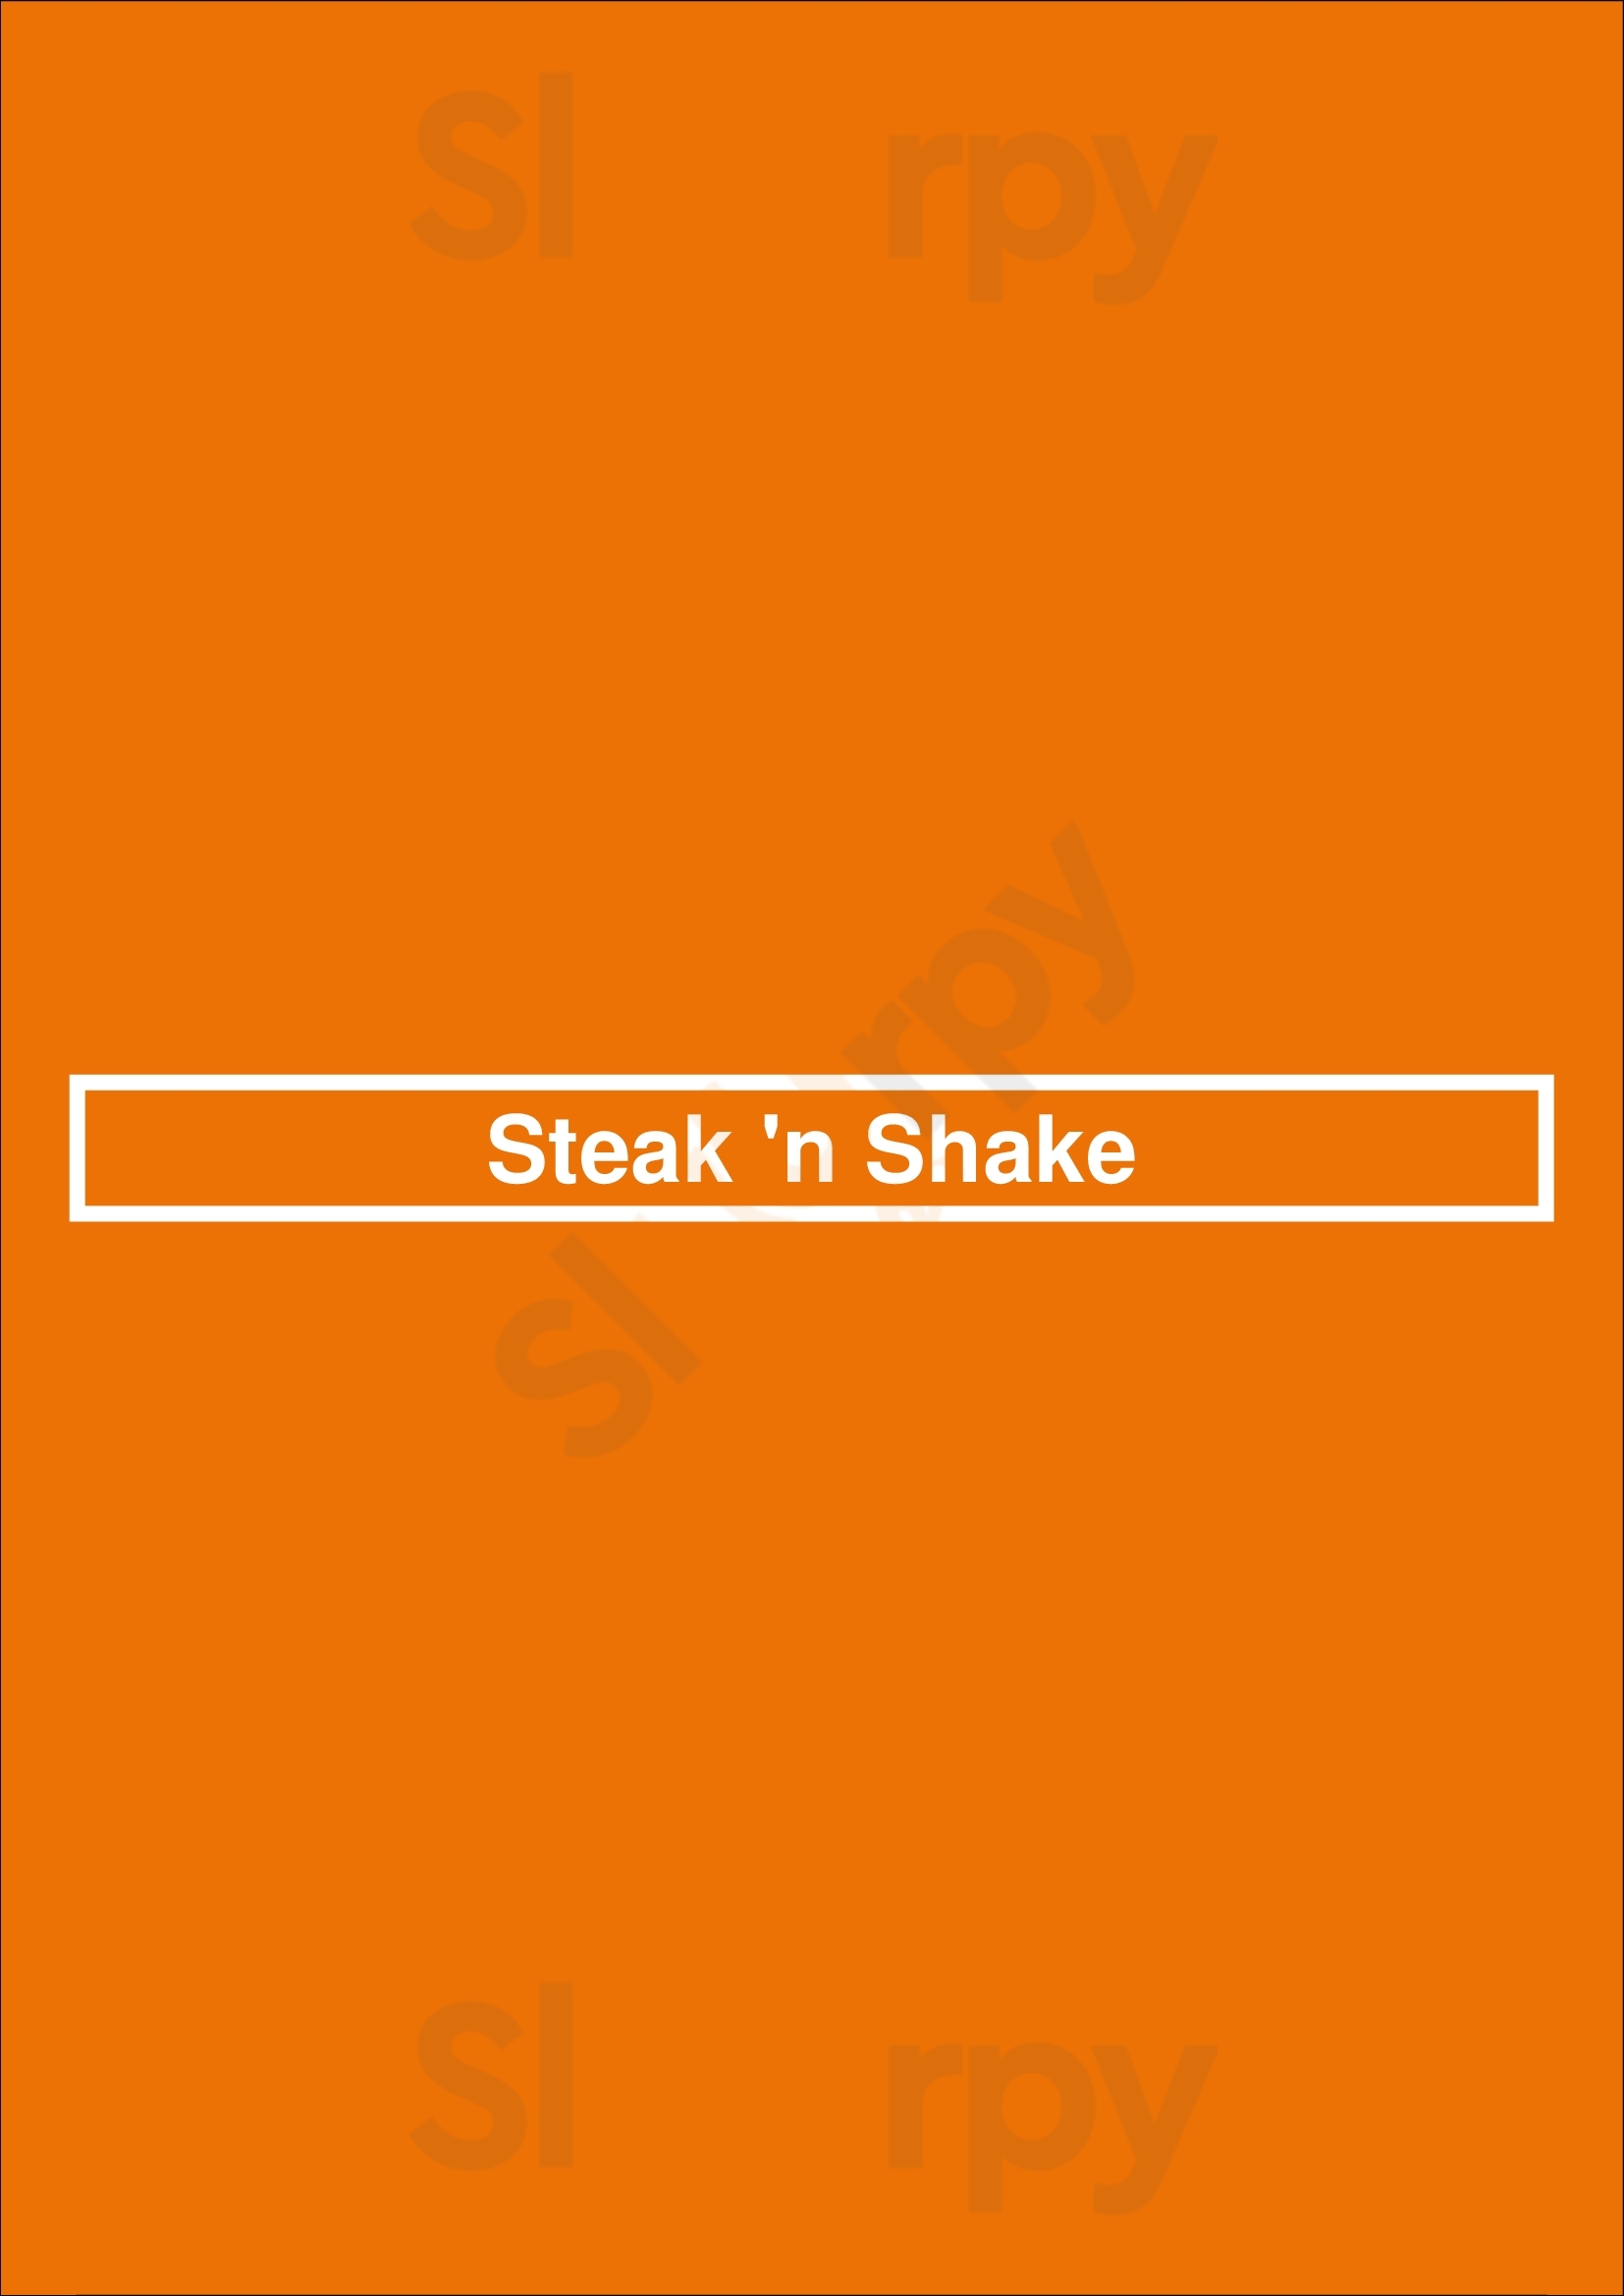 Steak 'n Shake Orange Park Menu - 1